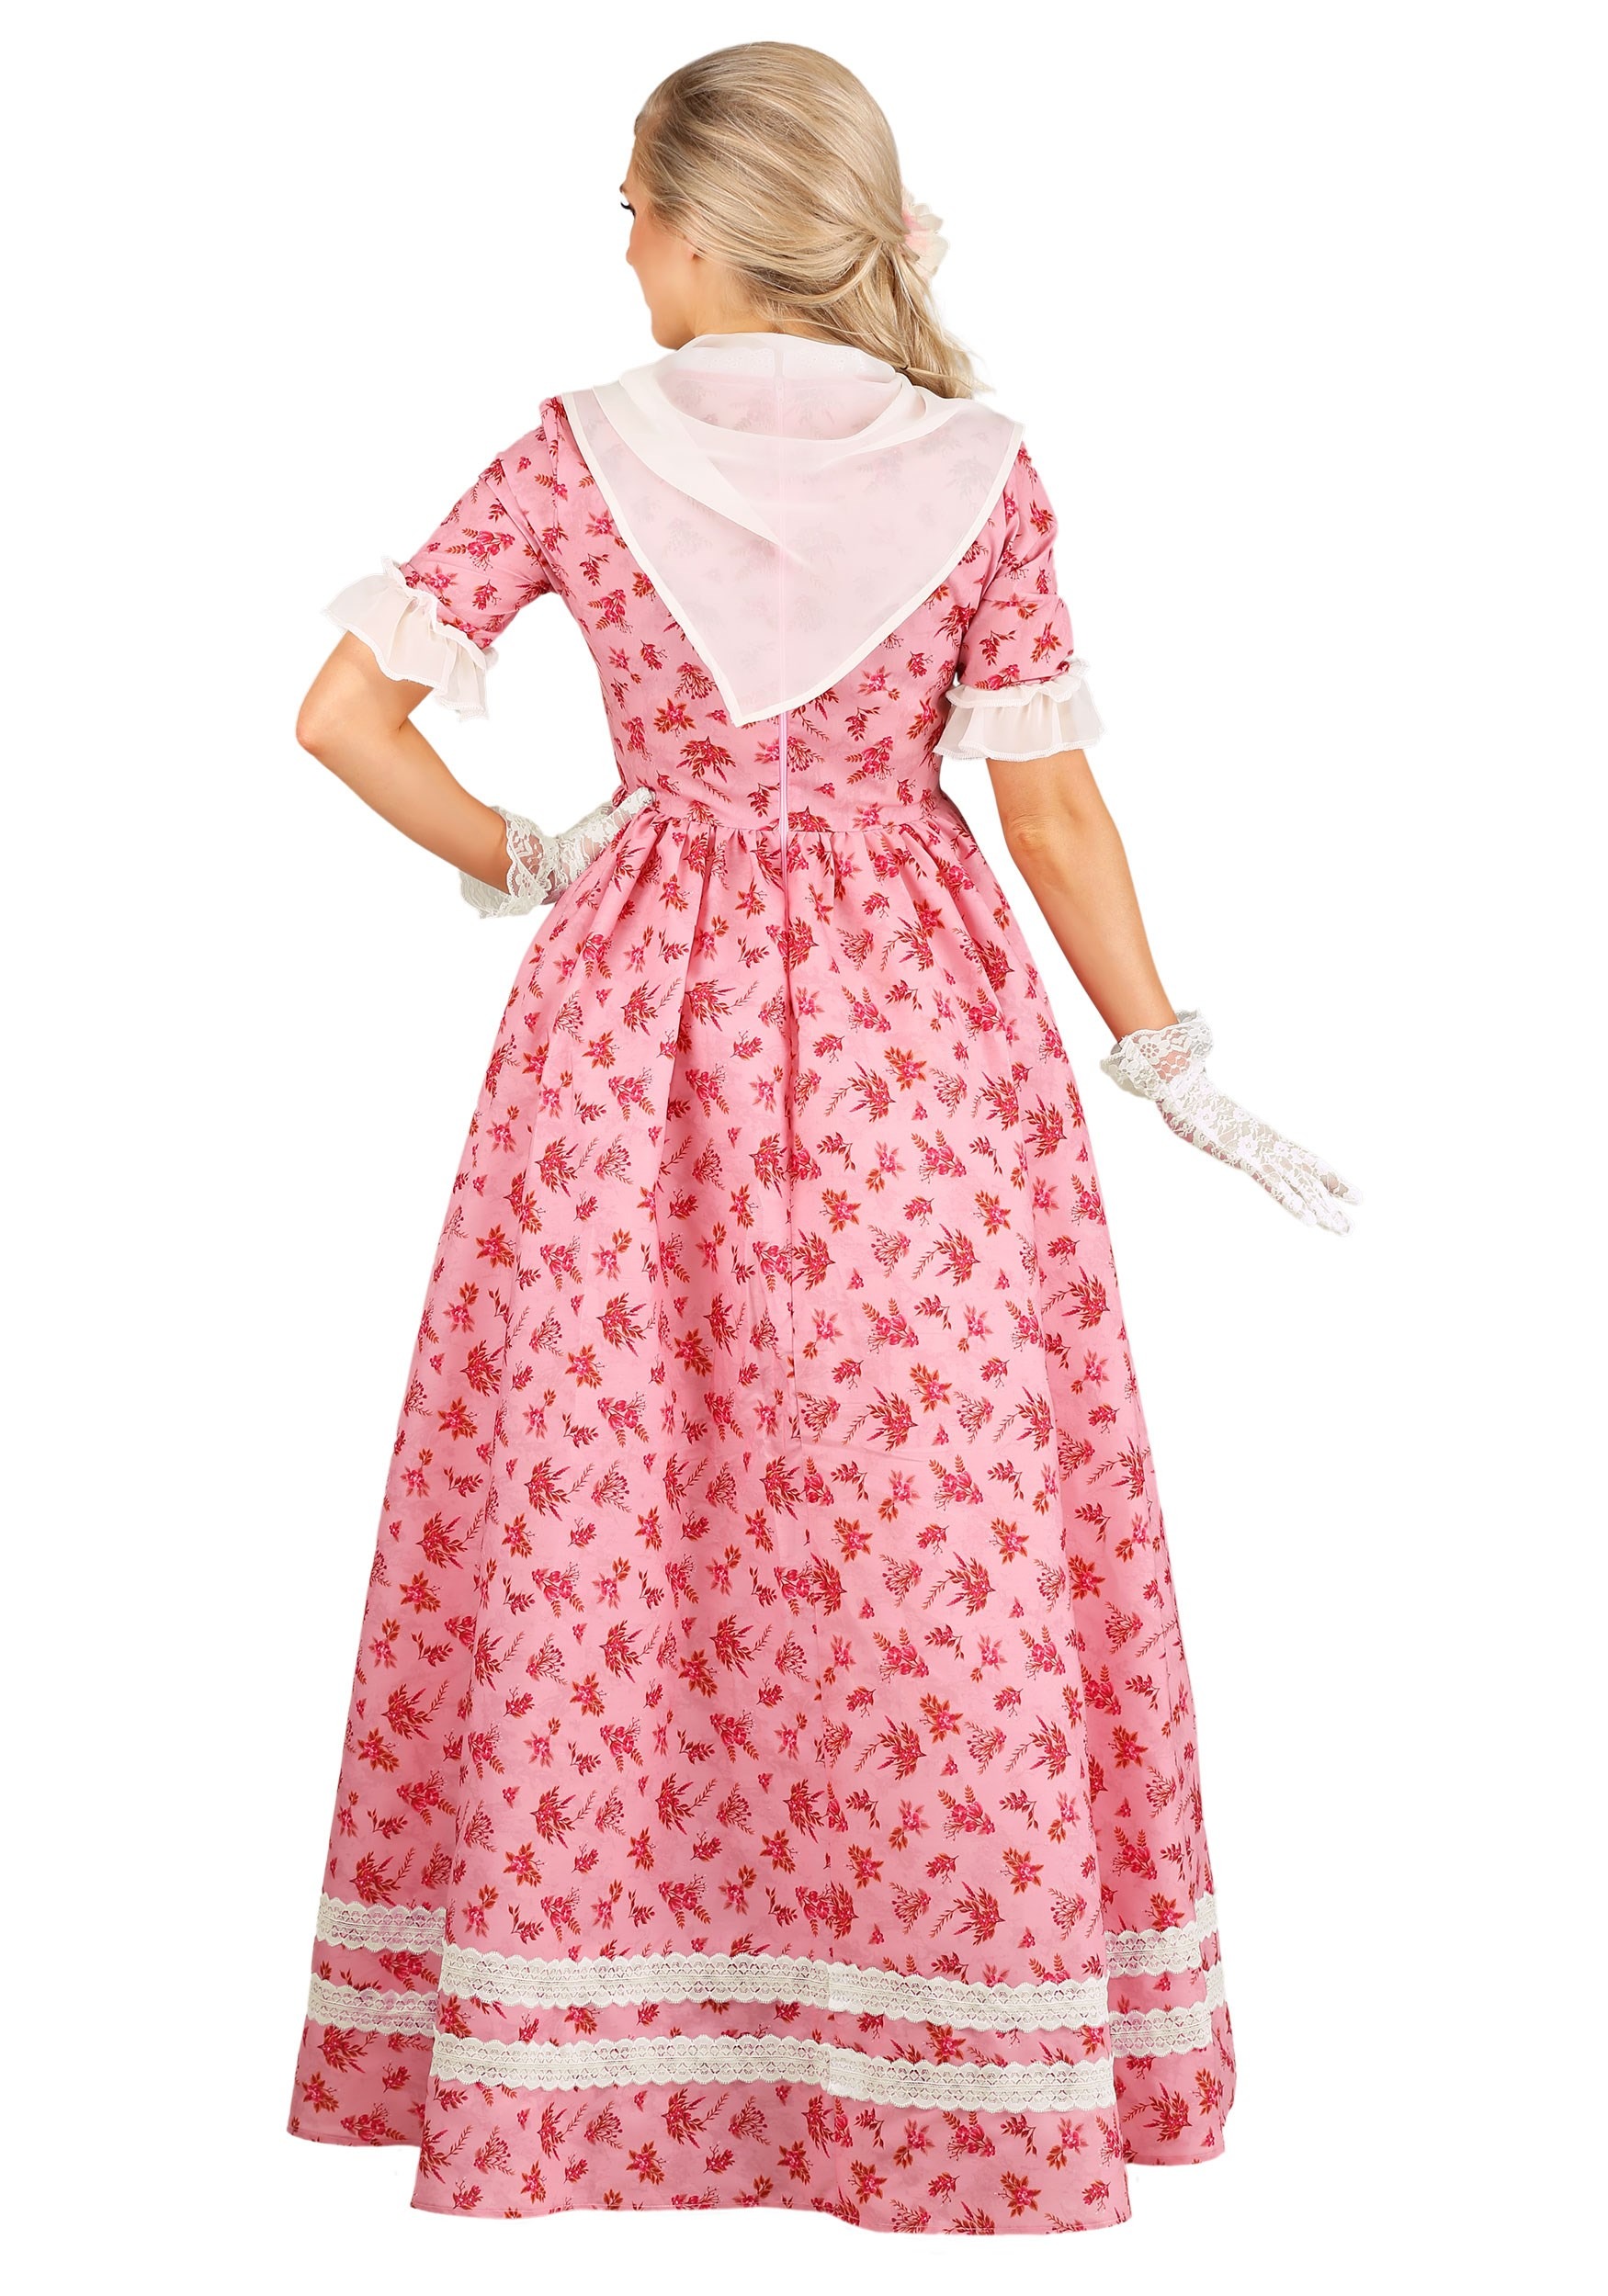 Lovely Southern Belle Women's Fancy Dress Costume